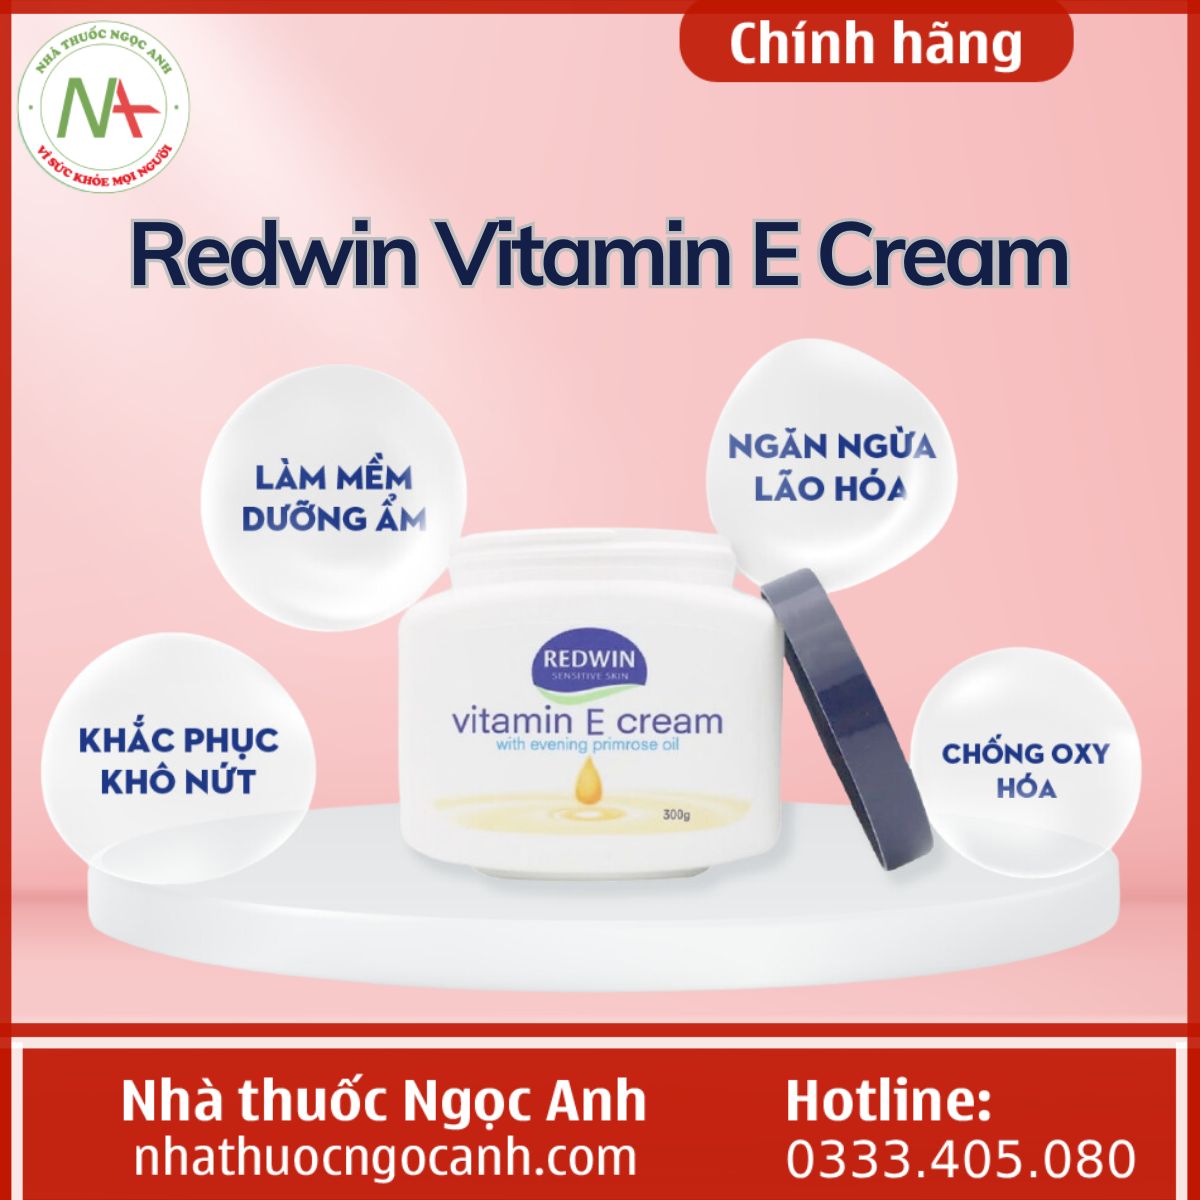 Redwin Vitamin E Cream dưỡng ẩm, chống lão hóa